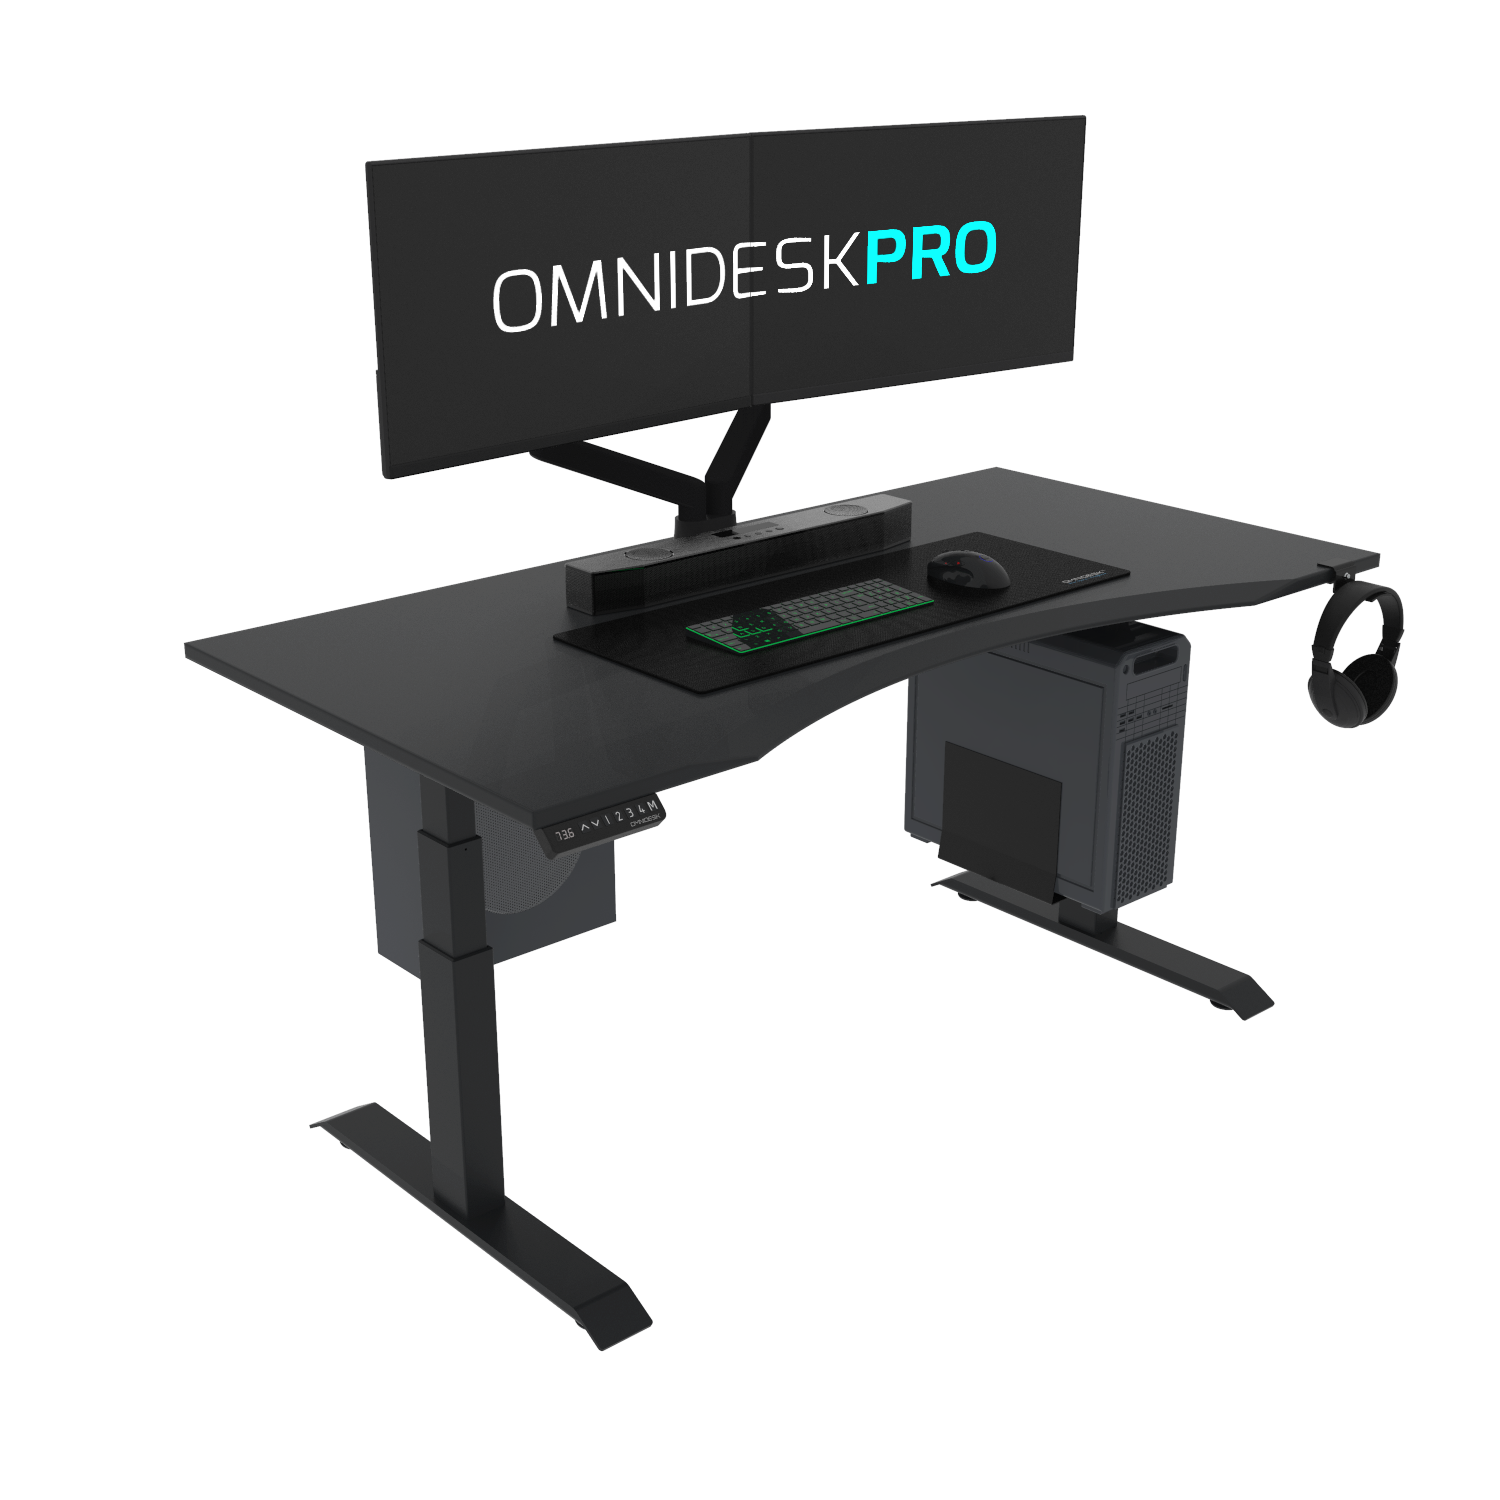 Omnidesk Pro - Custom Standing Desk from $680